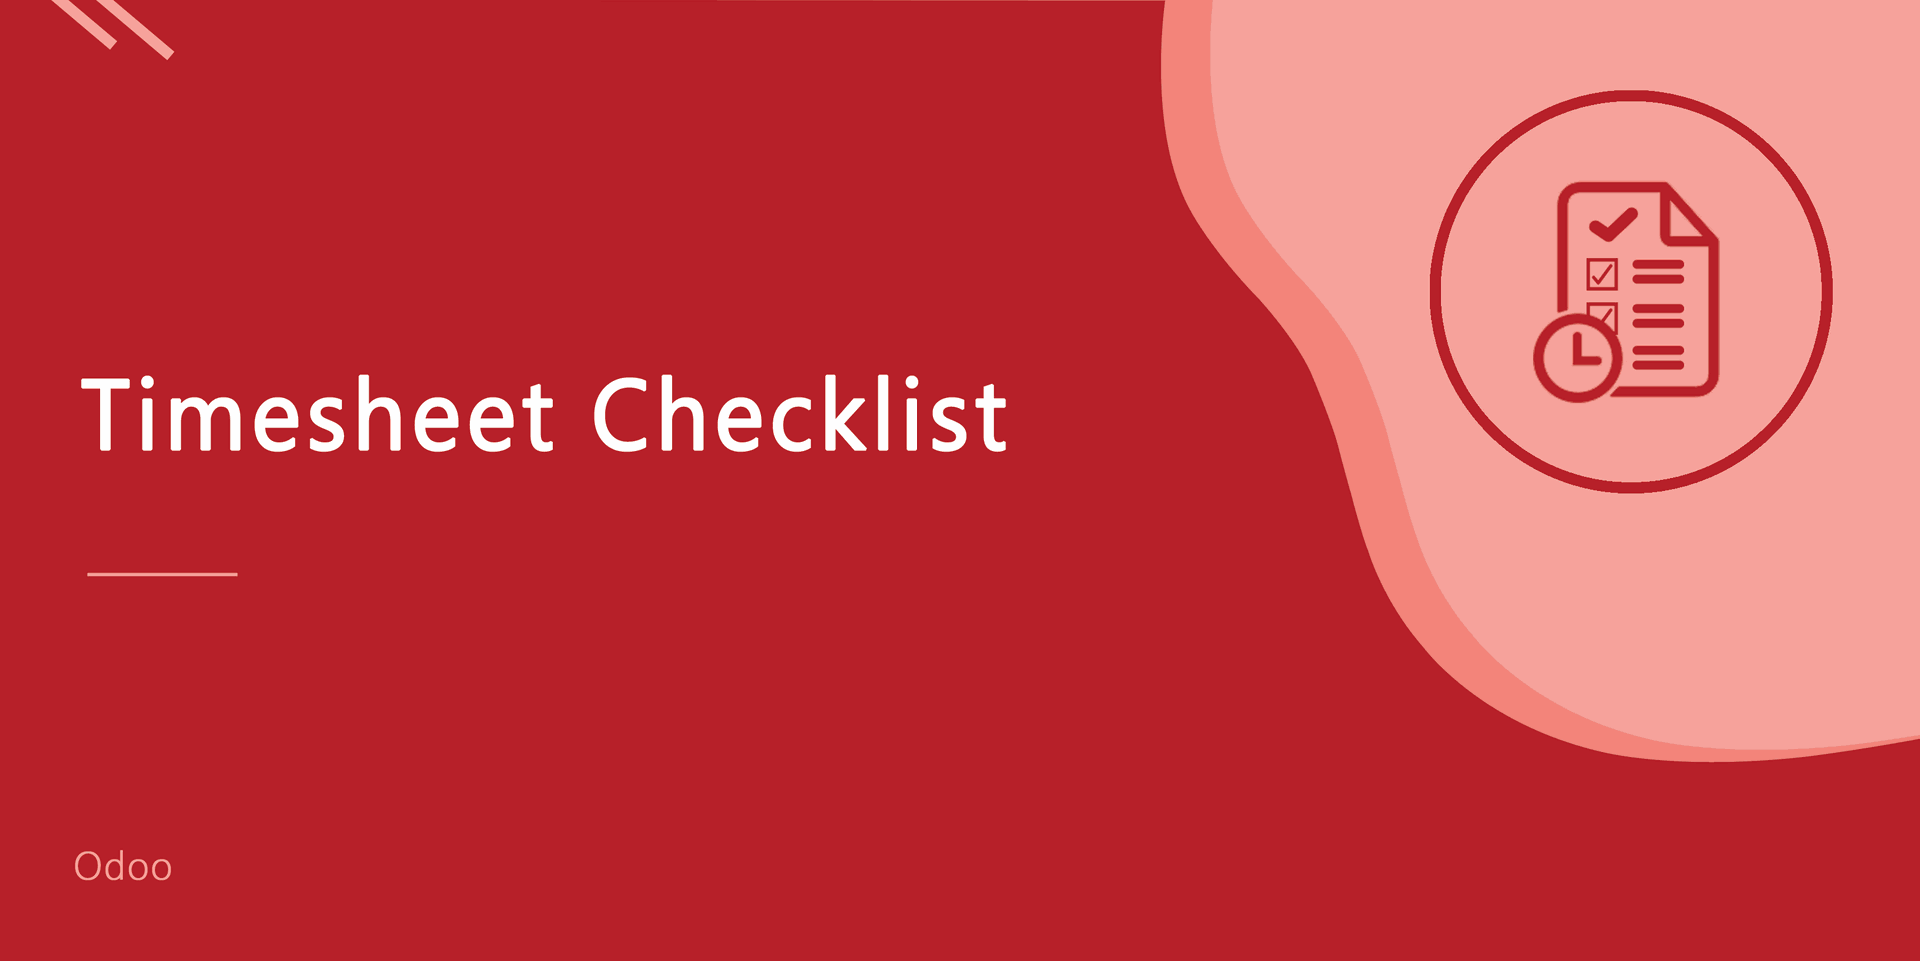 Timesheet Checklist
